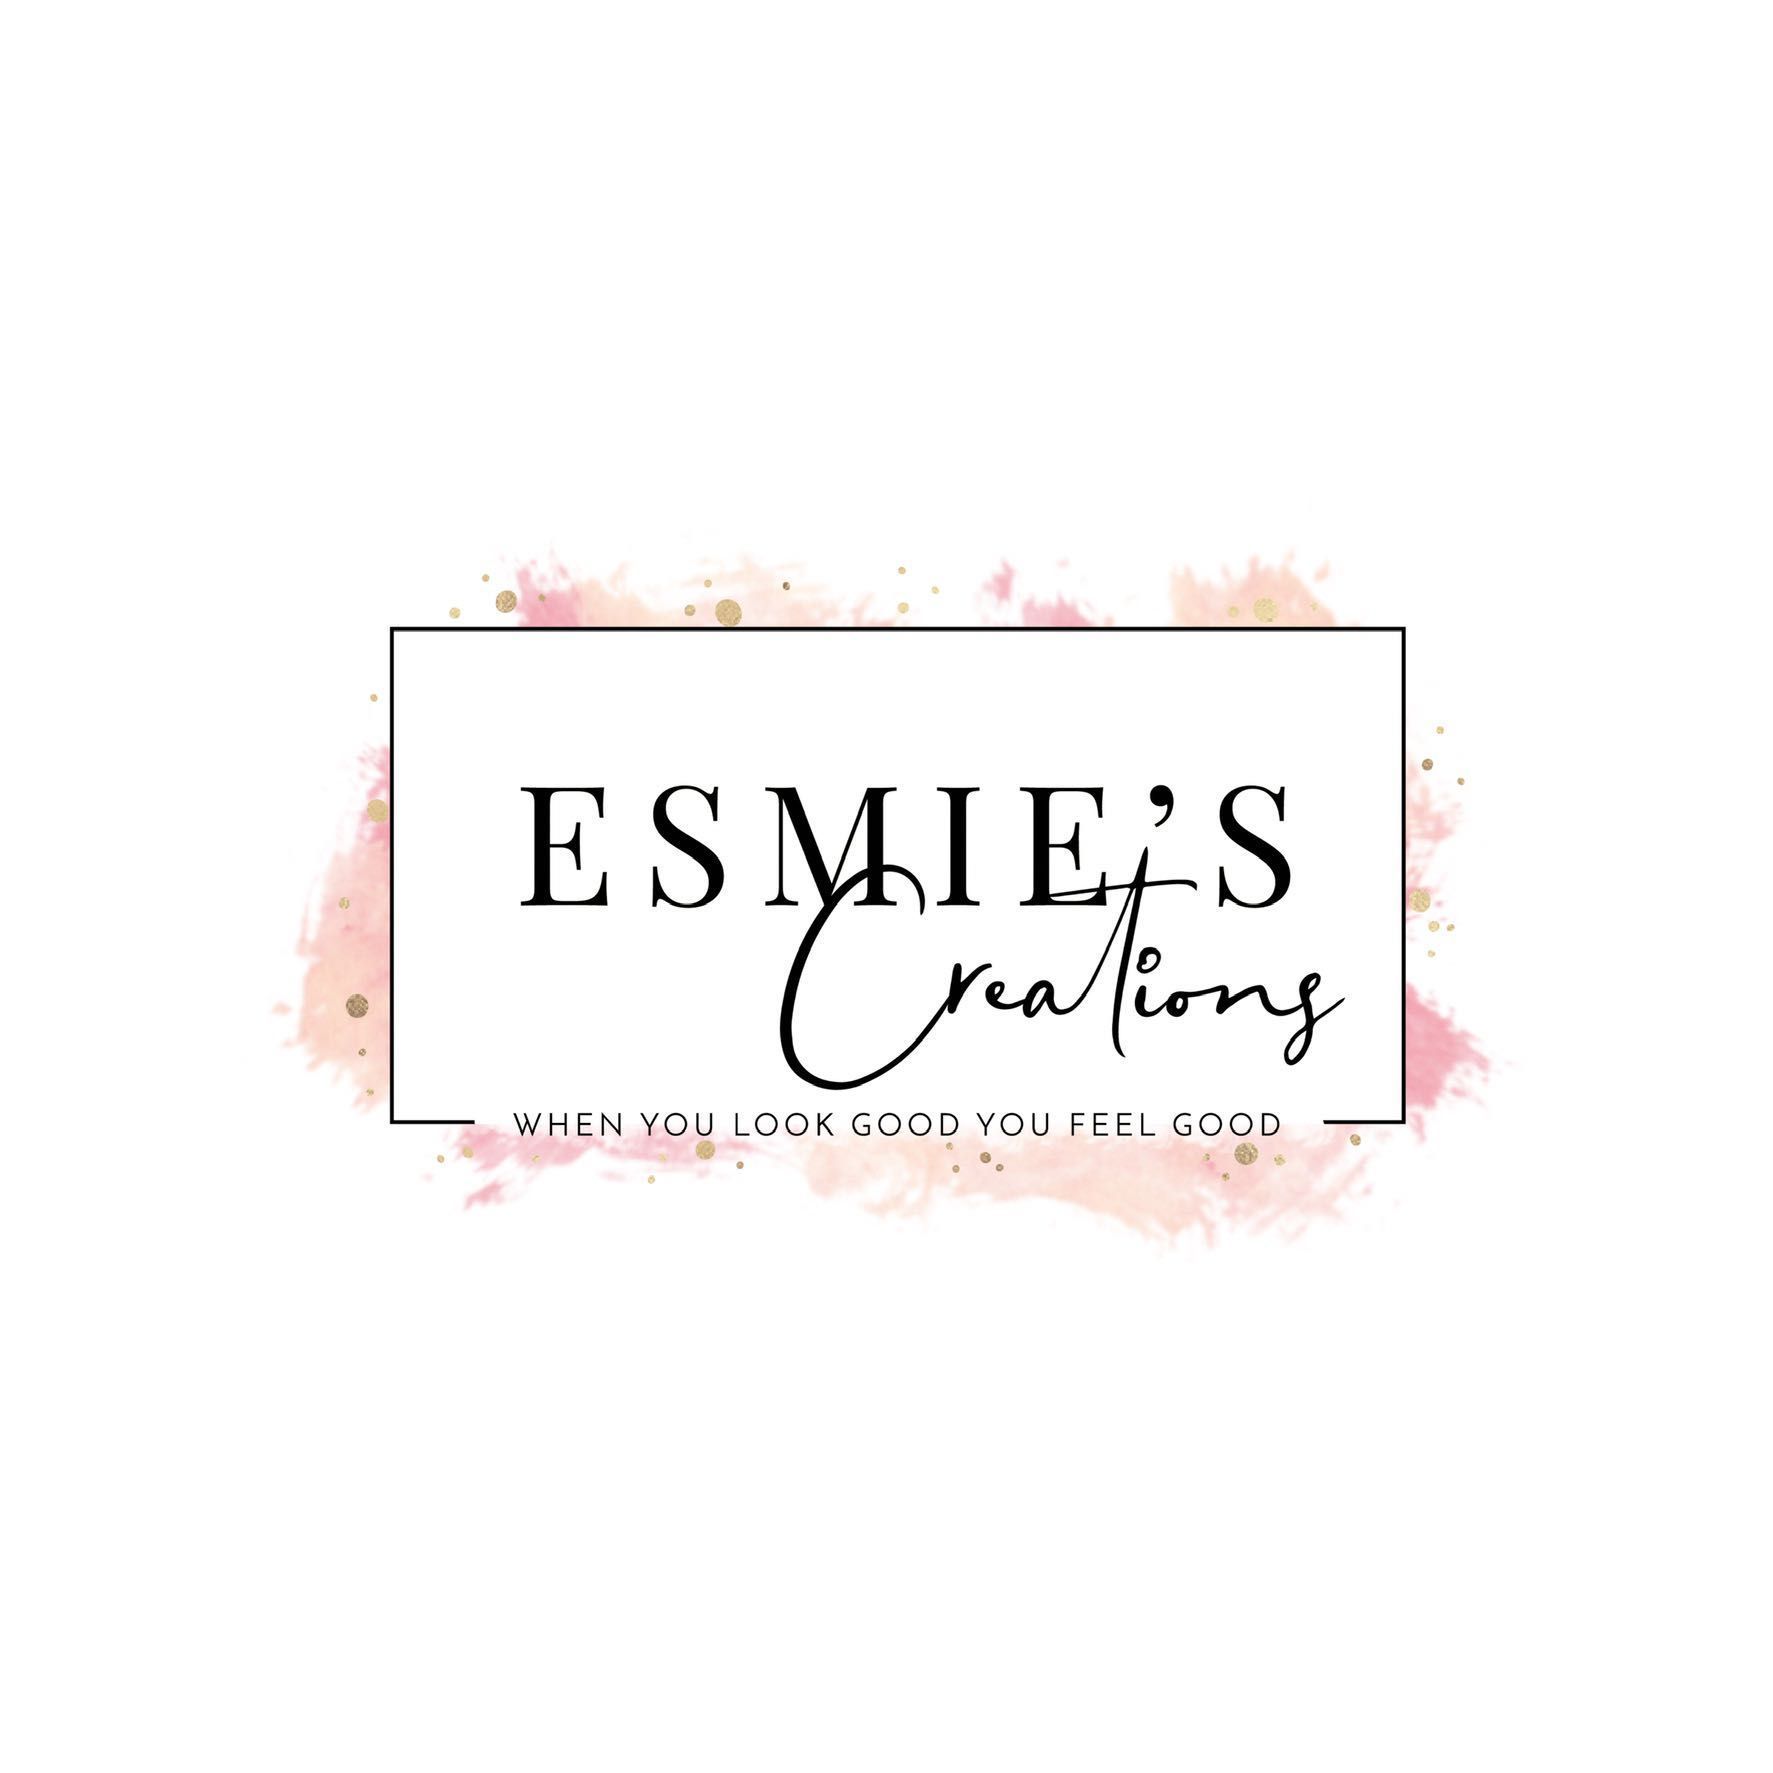 Esmie's Creations Beauty Salon, 4510 Weber Rd, Unit A, Corpus Christi, 78415